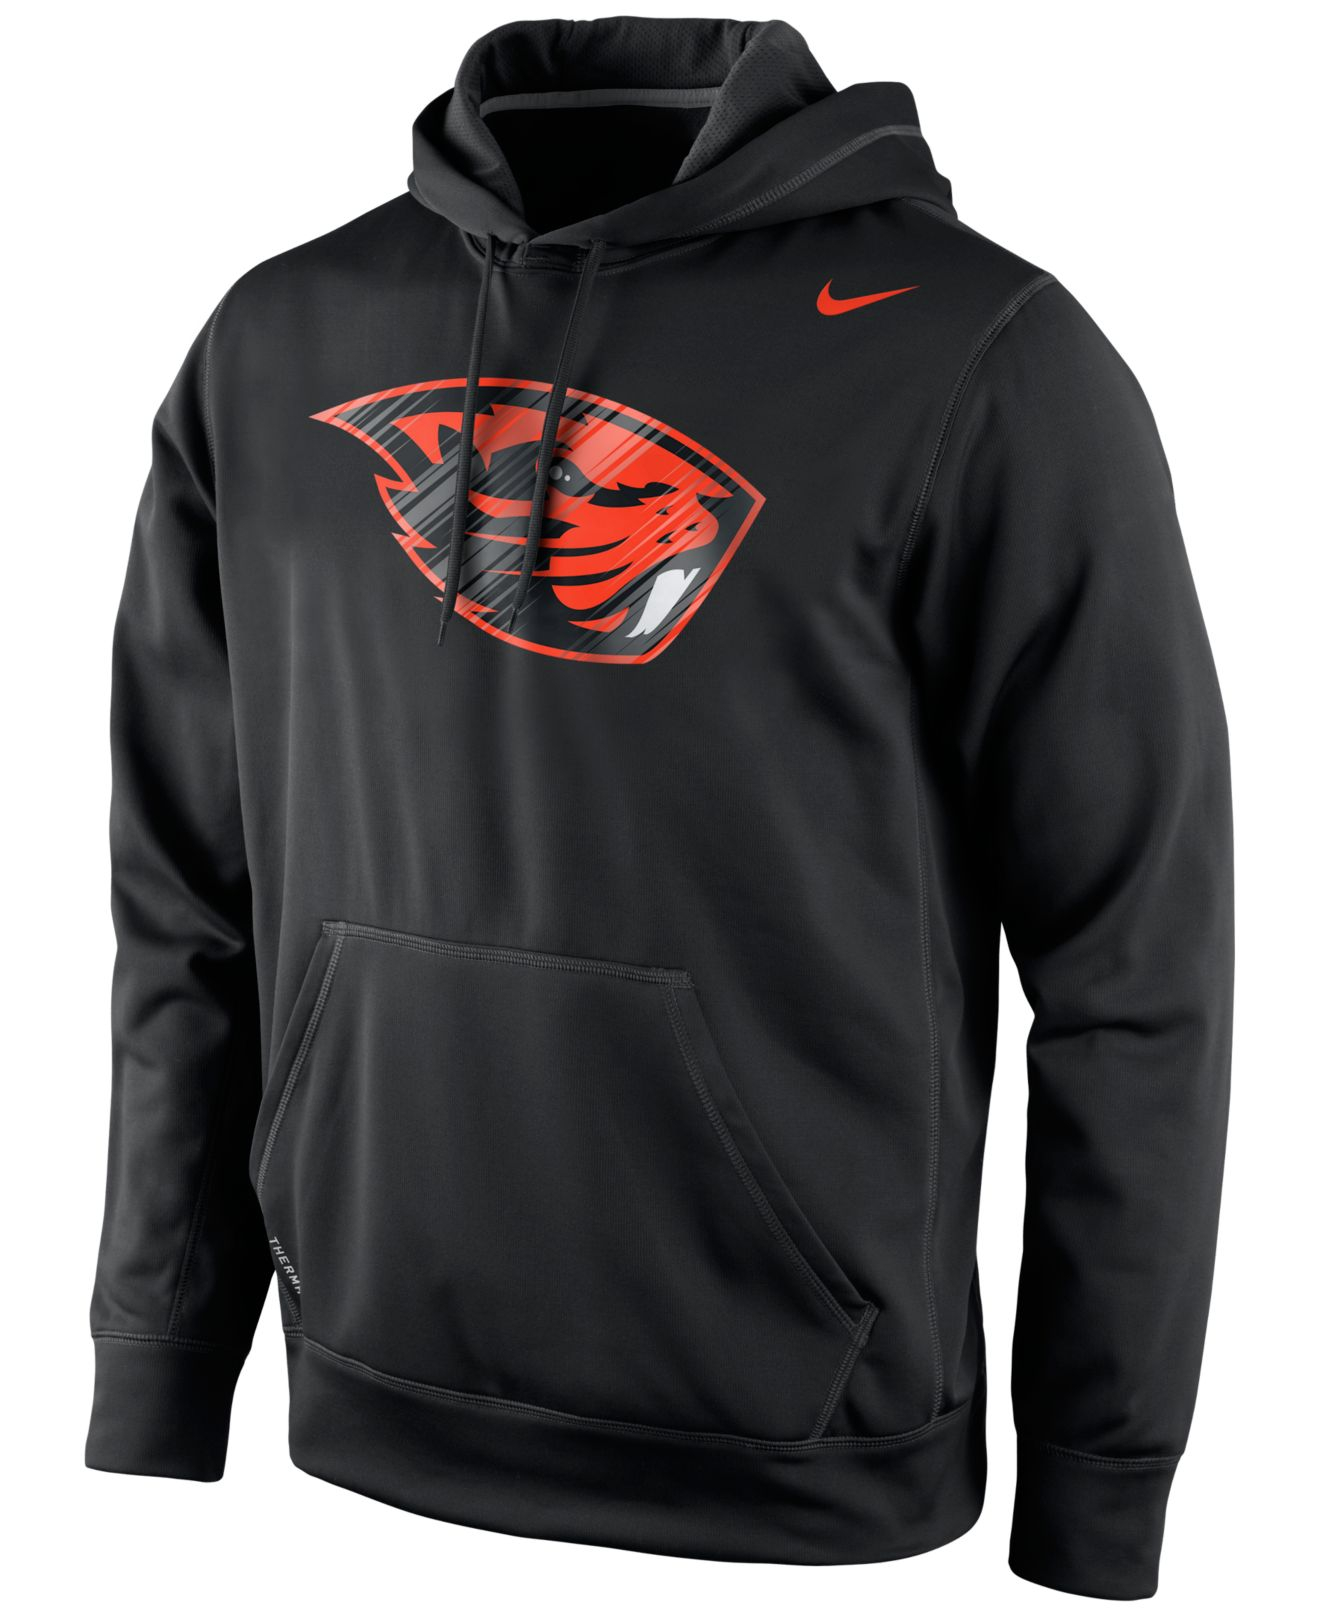 Lyst - Nike Men'S Oregon State Beavers Warp Performance Hoodie in Black ...